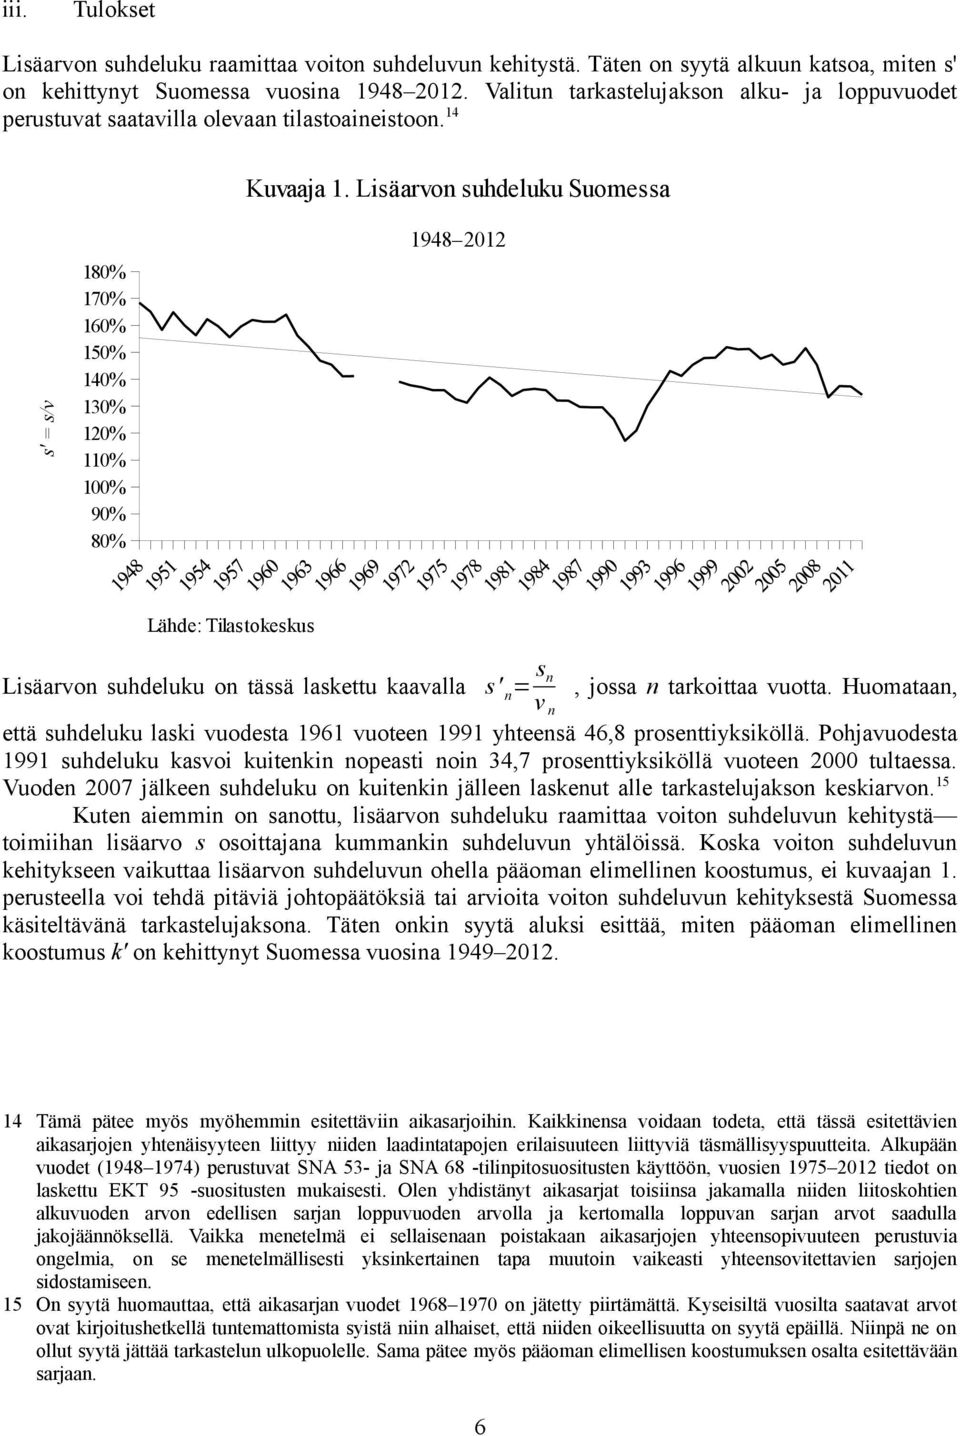 Lisäarvon suhdeluku Suomessa s' = s/v 180% 170% 160% 150% 140% 130% 120% 110% 100% 90% 80% 1948 2012 Lähde: Tilastokeskus Lisäarvon suhdeluku on tässä laskettu kaavalla s' n = s n v n, jossa n